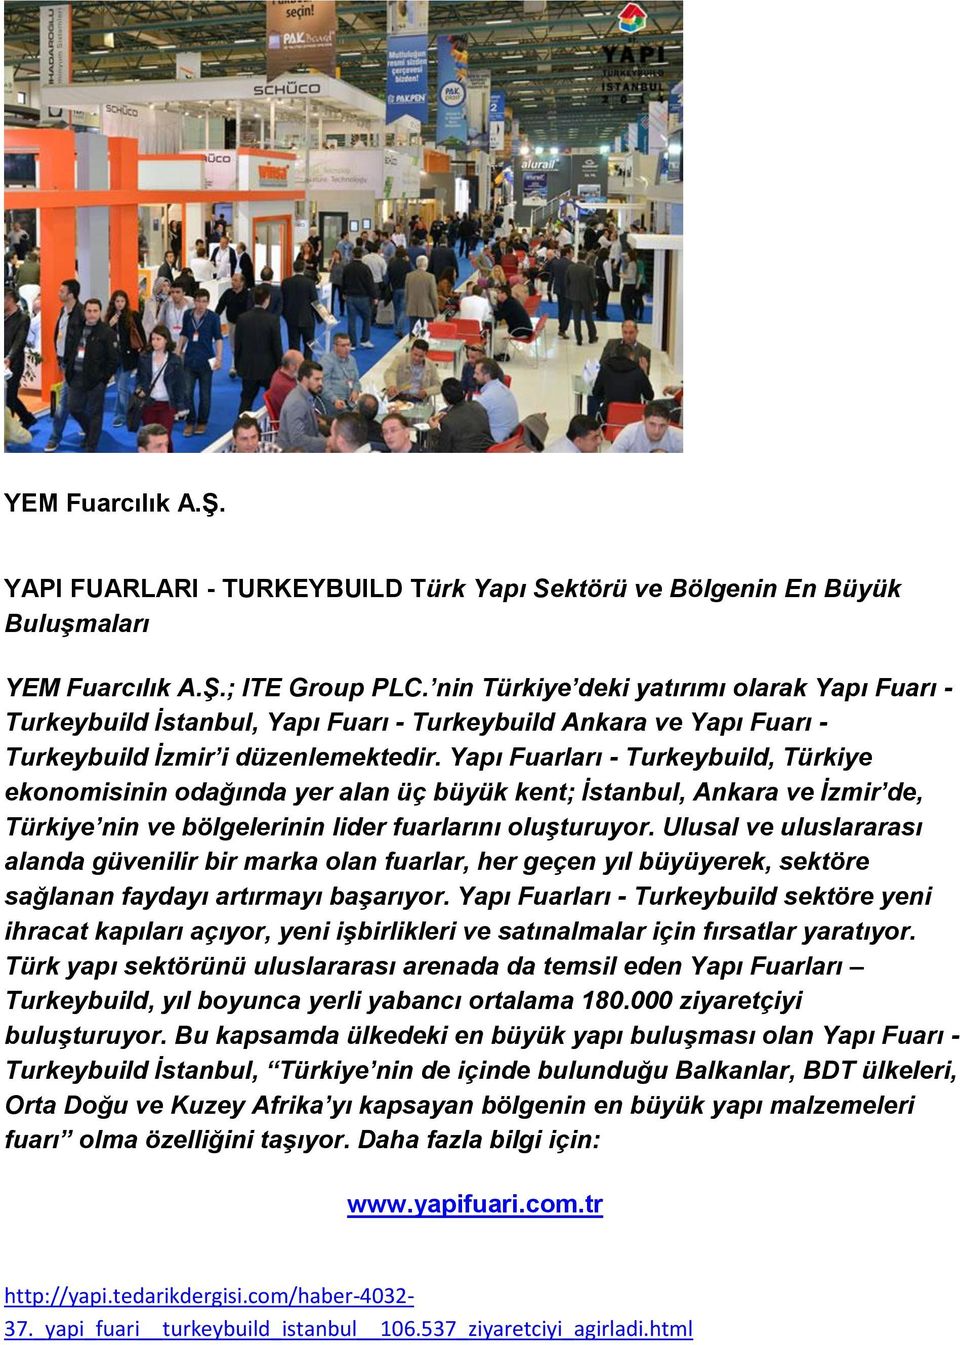 Yapı Fuarları - Turkeybuild, Türkiye ekonomisinin odağında yer alan üç büyük kent; İstanbul, Ankara ve İzmir de, Türkiye nin ve bölgelerinin lider fuarlarını oluşturuyor.